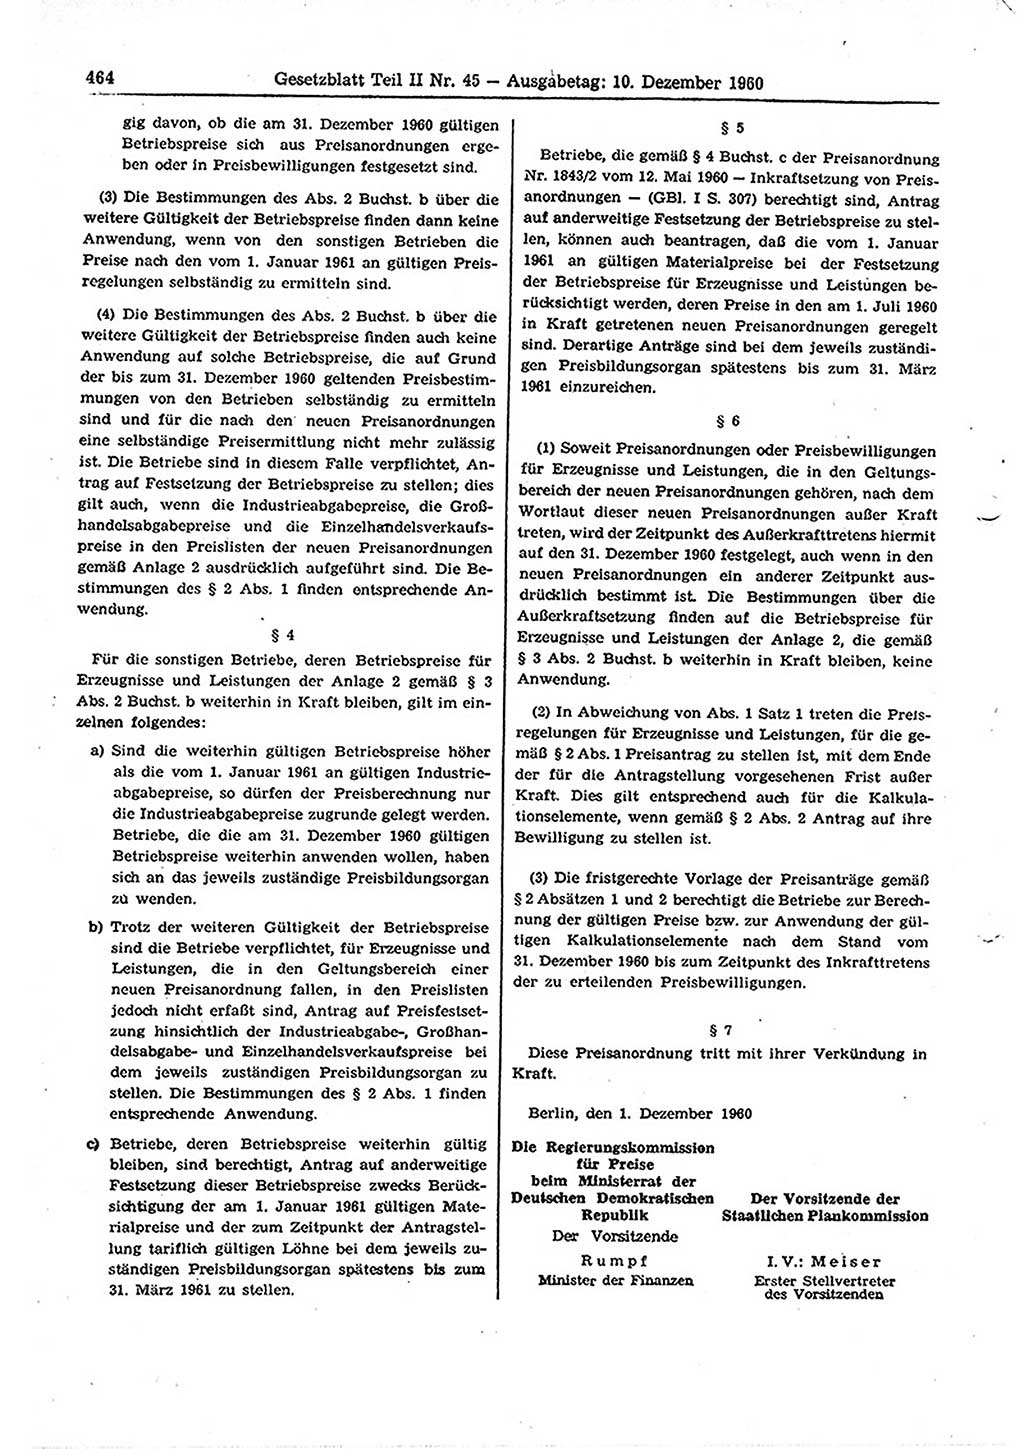 Gesetzblatt (GBl.) der Deutschen Demokratischen Republik (DDR) Teil ⅠⅠ 1960, Seite 464 (GBl. DDR ⅠⅠ 1960, S. 464)